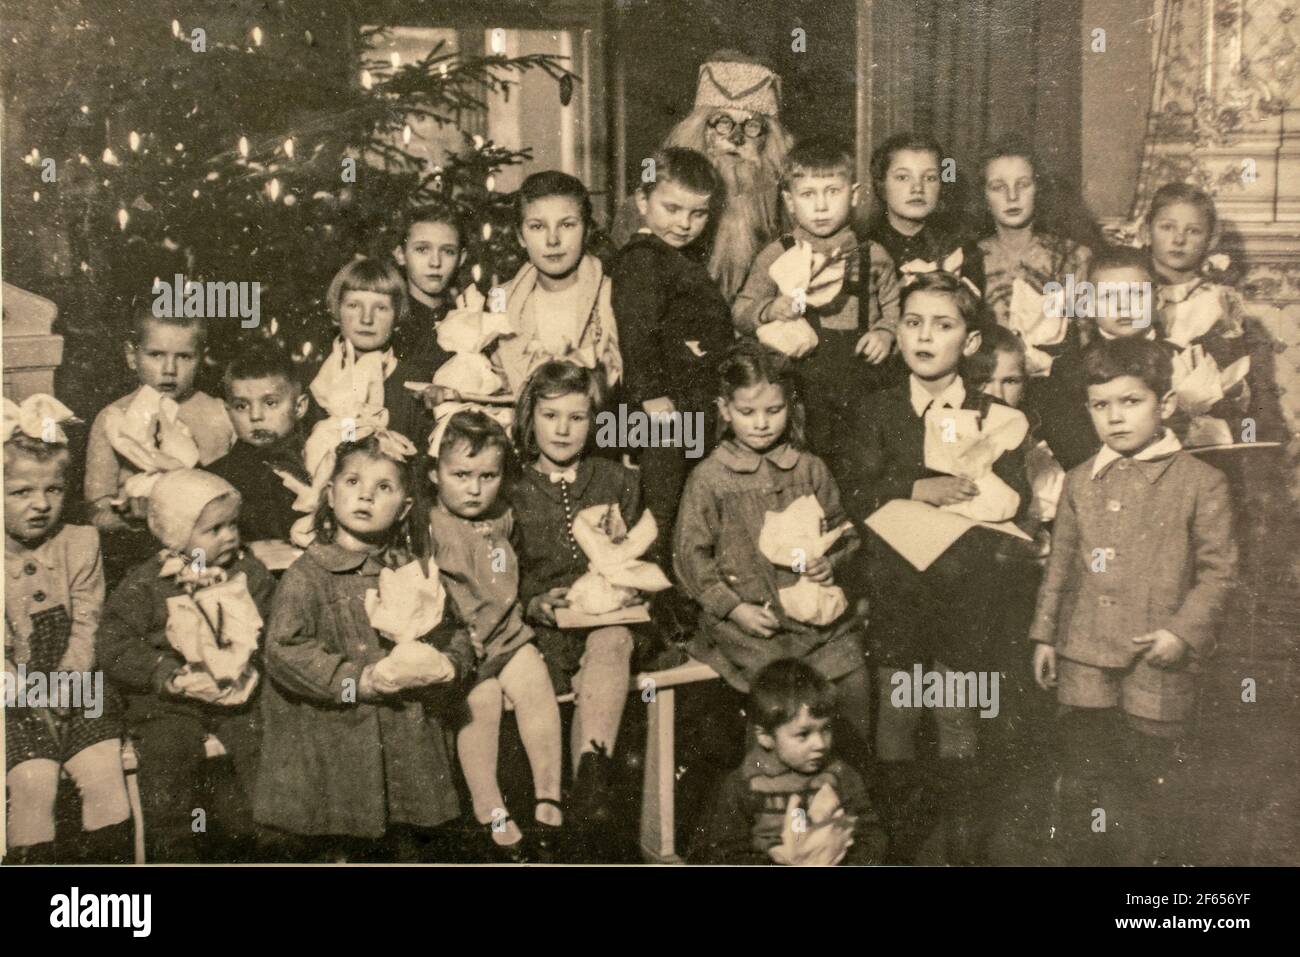 Deutschland - UM 1940s: Gruppenfoto von kleinen Kindern Mädchen Jungen und Weihnachtsmann auf Weihnachten Silvester Party. Vintage Archiv Art Deco Ära Fotografie Stockfoto